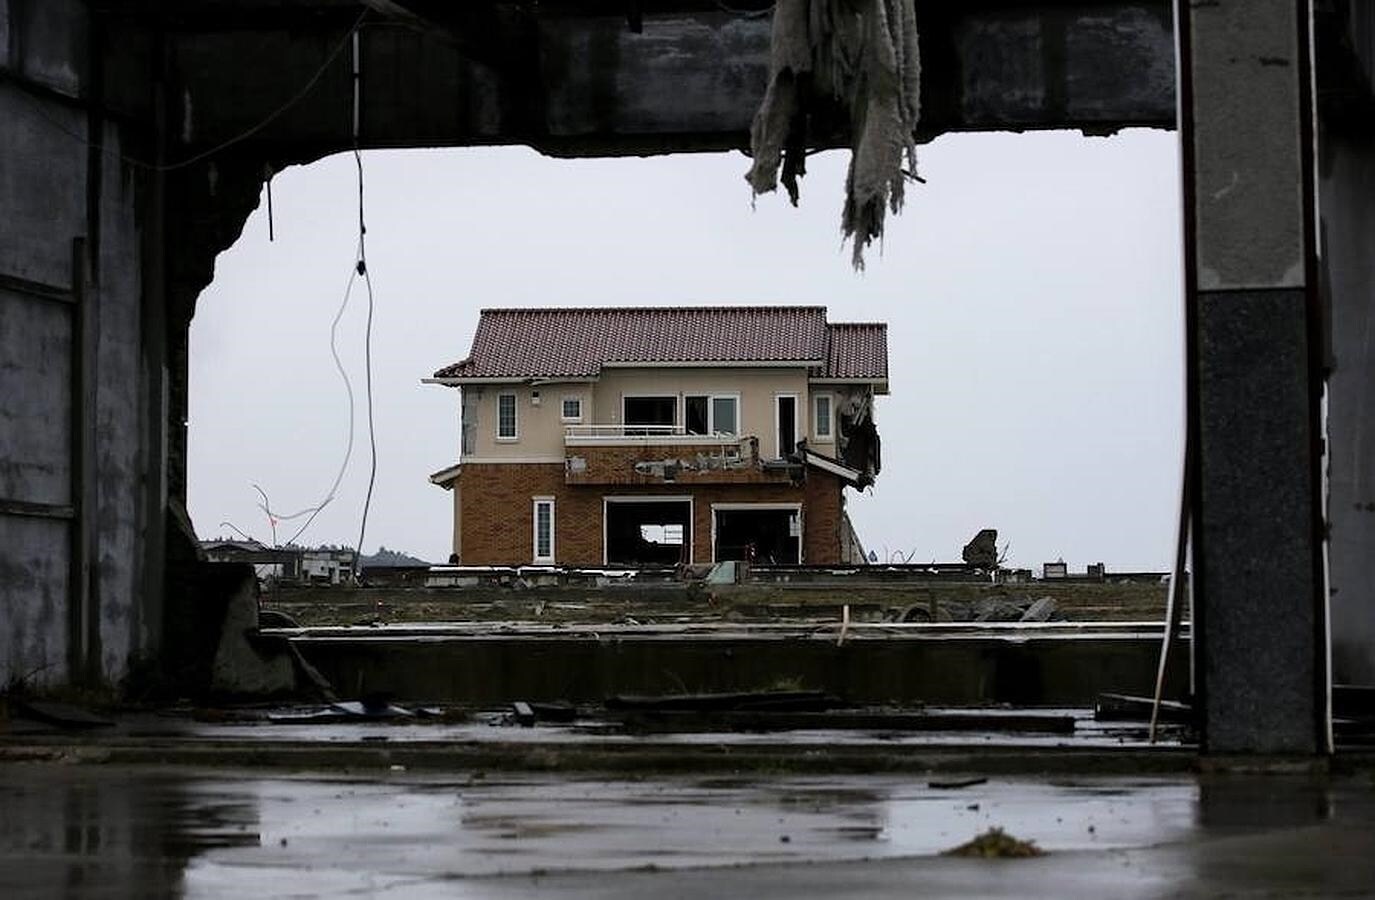 Imagen tomada este 9 de marzo de una casa destruida por el terremoto de 9 grados Richter que se registró en la costa noreste de Japón, el 11 de marzo de 2011